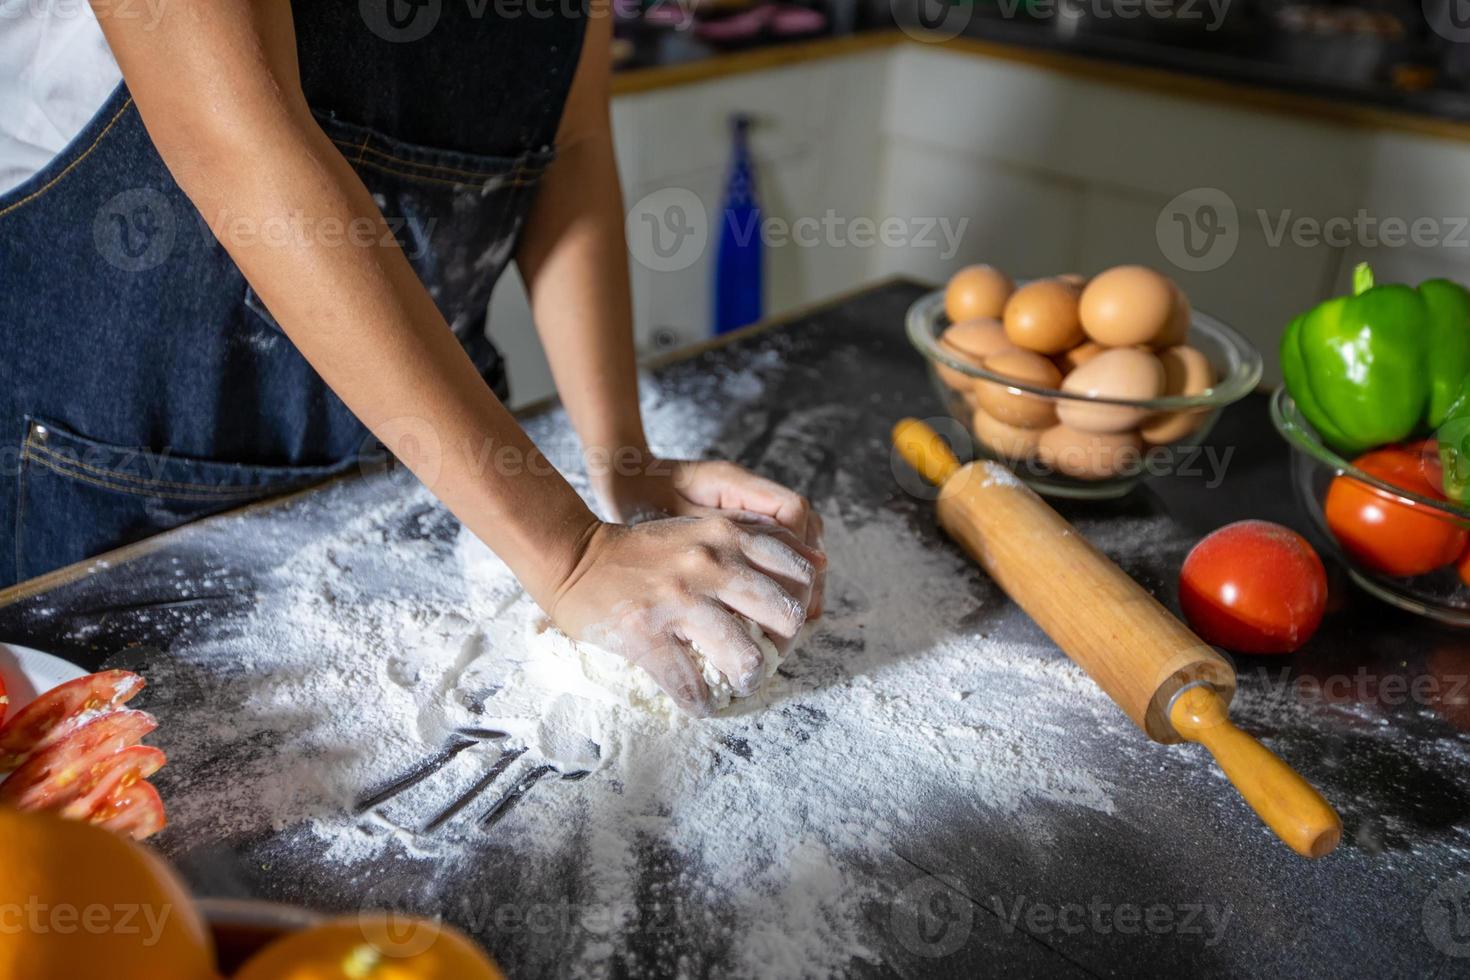 mujeres asiáticas preparando una pizza, amasan la masa y ponen los ingredientes en la mesa de la cocina foto